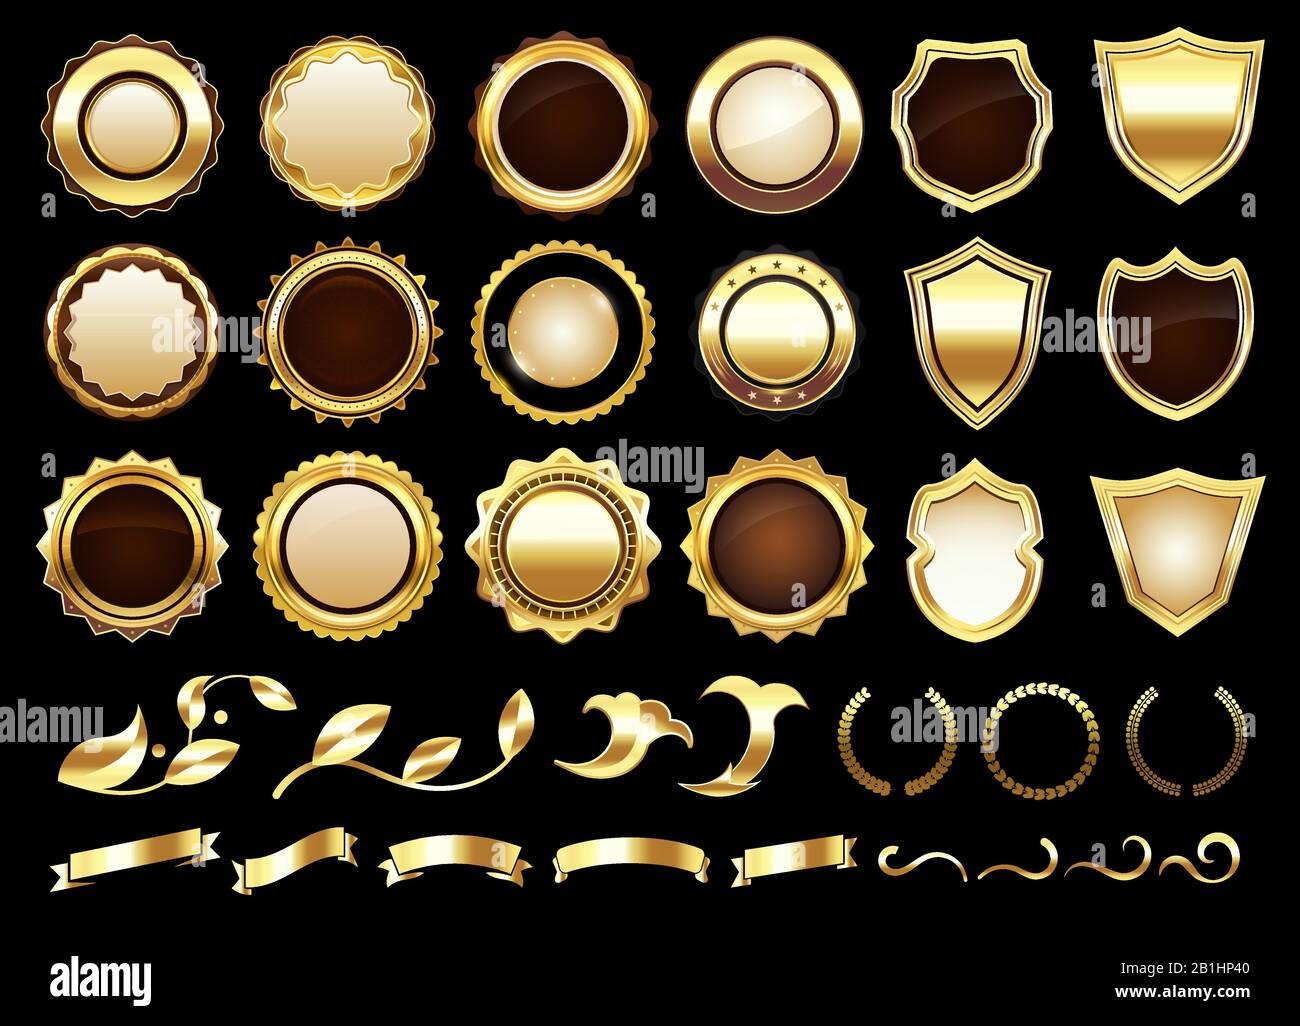 Elegantes etiquetas doradas. Escudos insignias, rollos ornamentales de oro amd etiqueta retro vector ilustración conjunto Ilustración del Vector